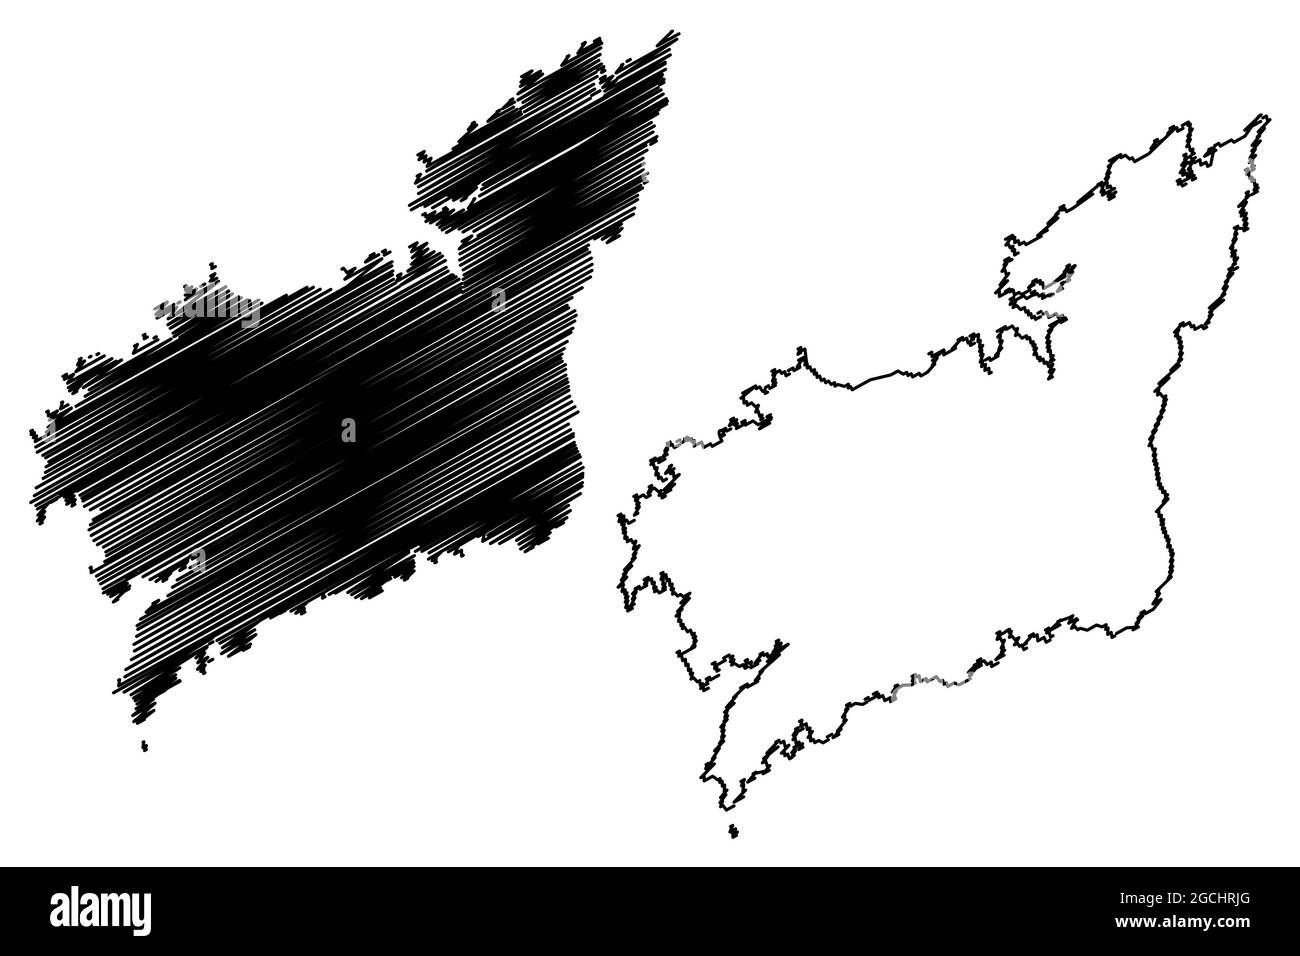 Province of A Coruna (Kingdom of Spain, Autonomous community of Galicia) map vector illustration, scribble sketch La Coruna map Stock Vector